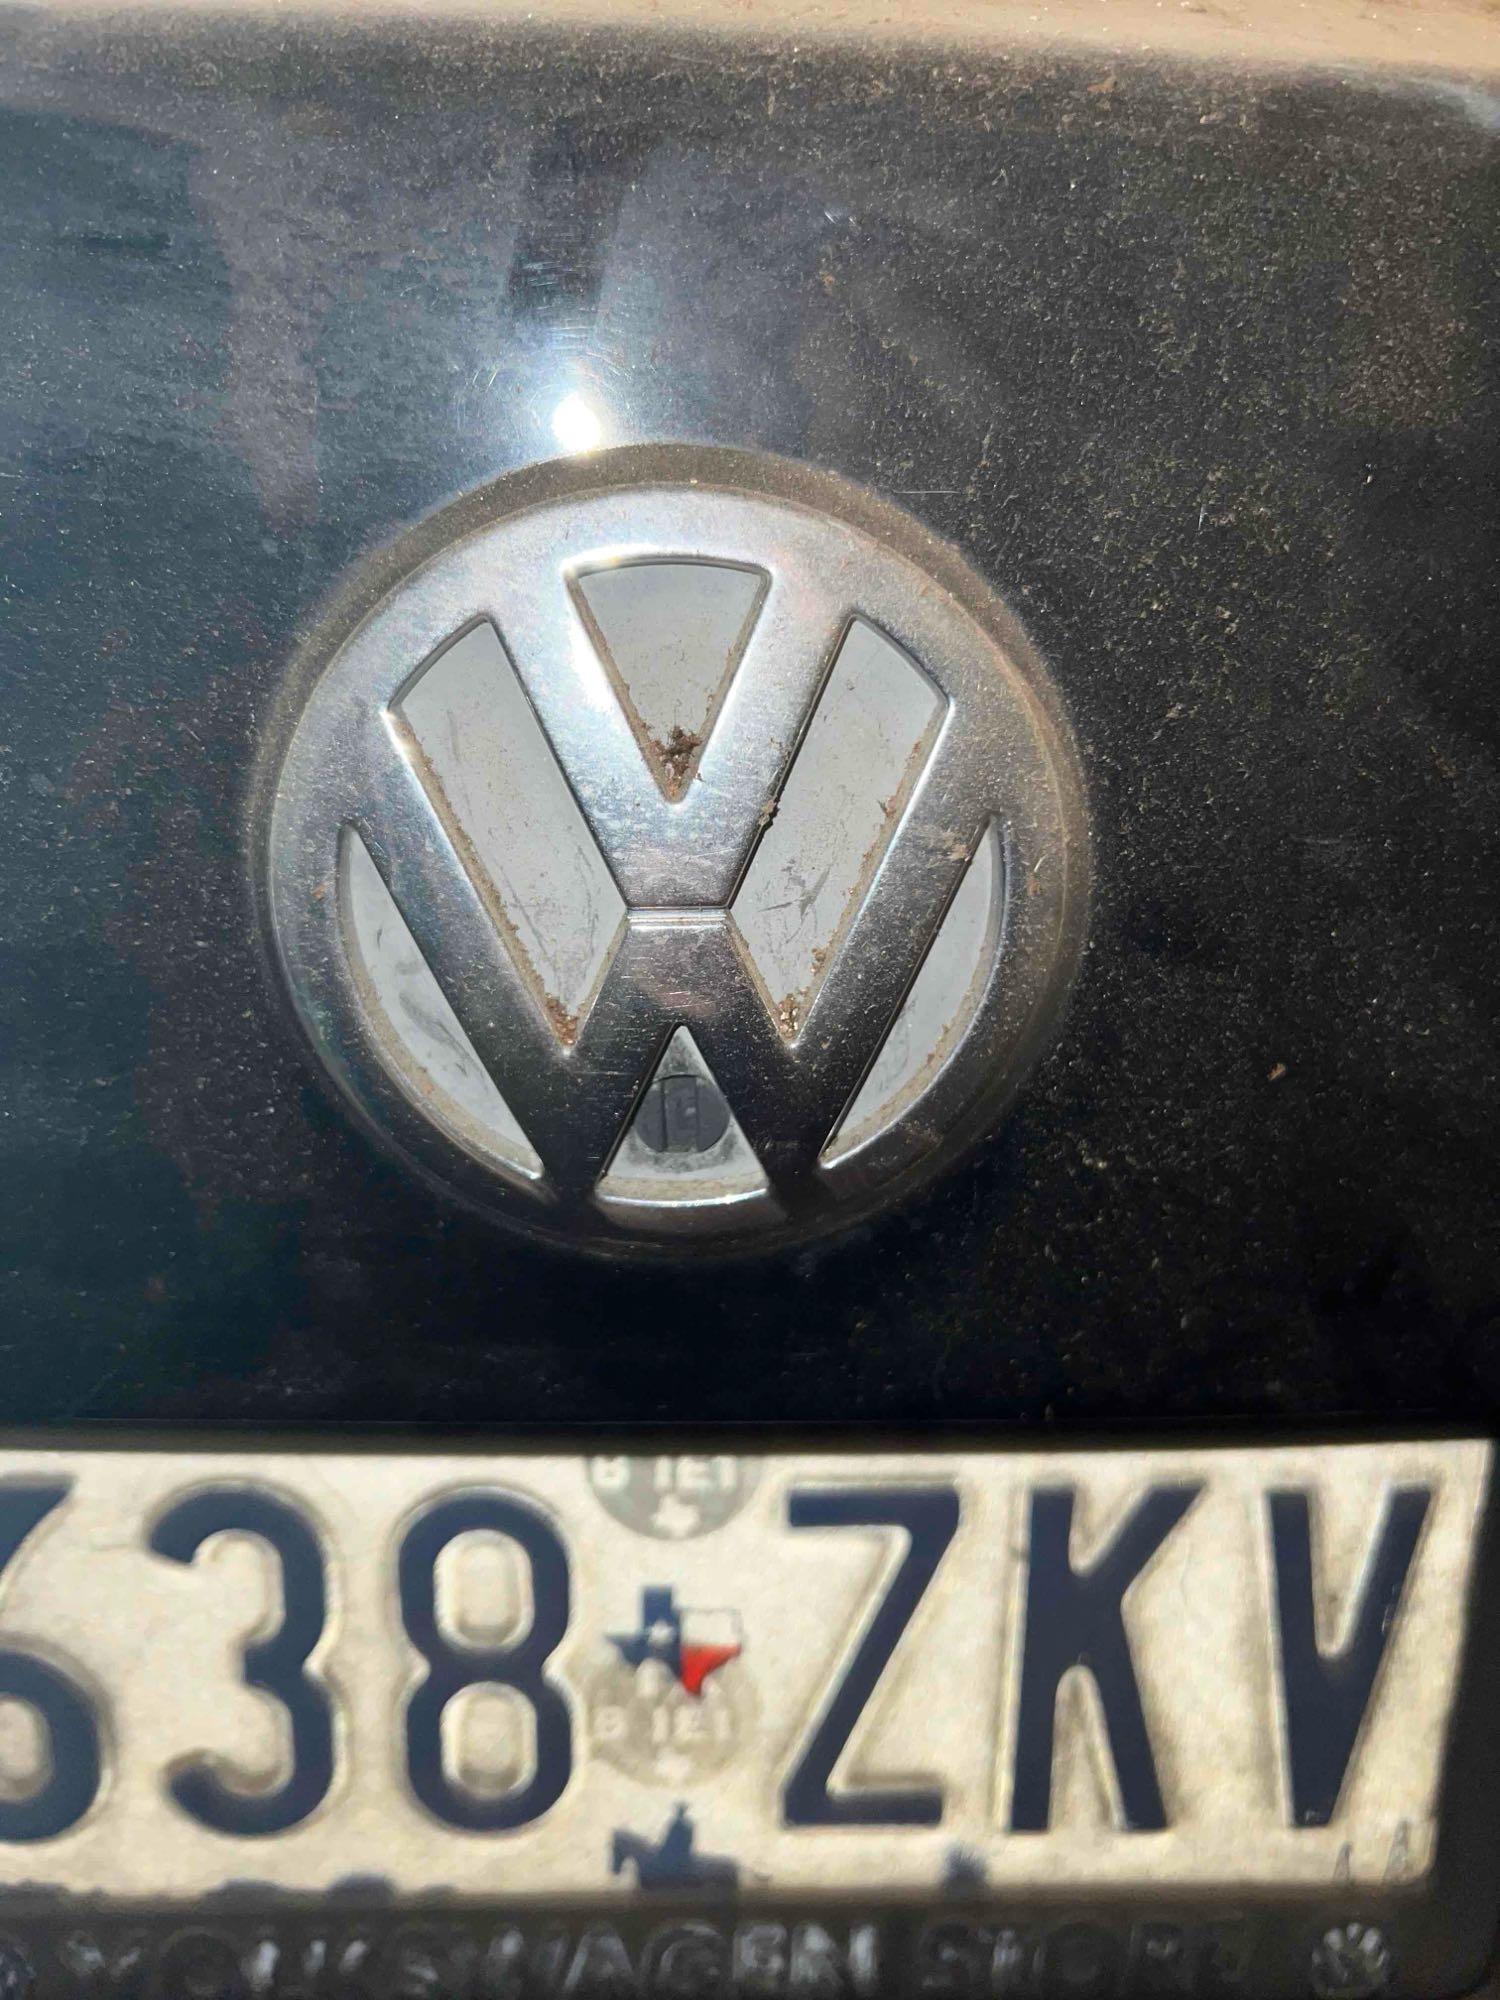 2000 Volkswagen Jetta - Does not run - Miles Unknown